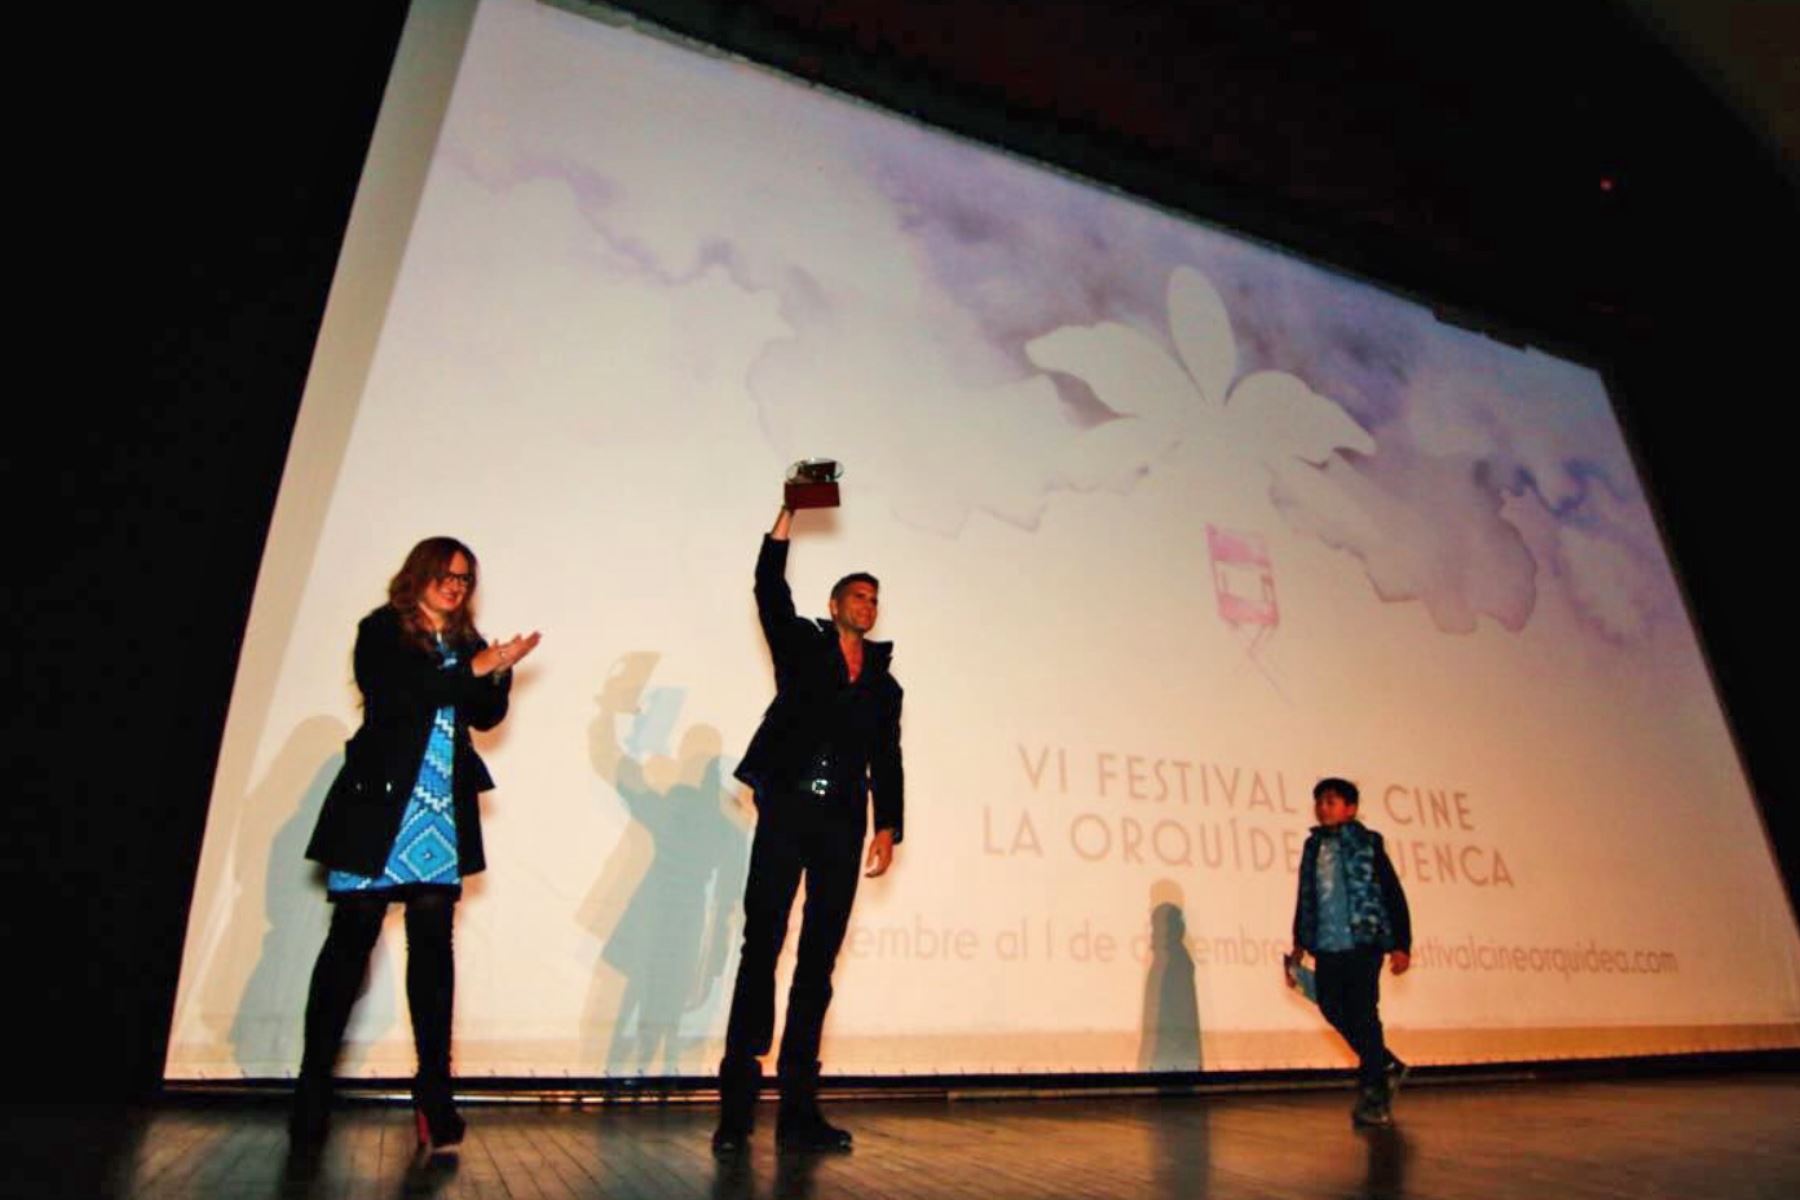 Meier recibió importante reconcimiento en el festival cinéfilo.Foto:@CineOrquidea